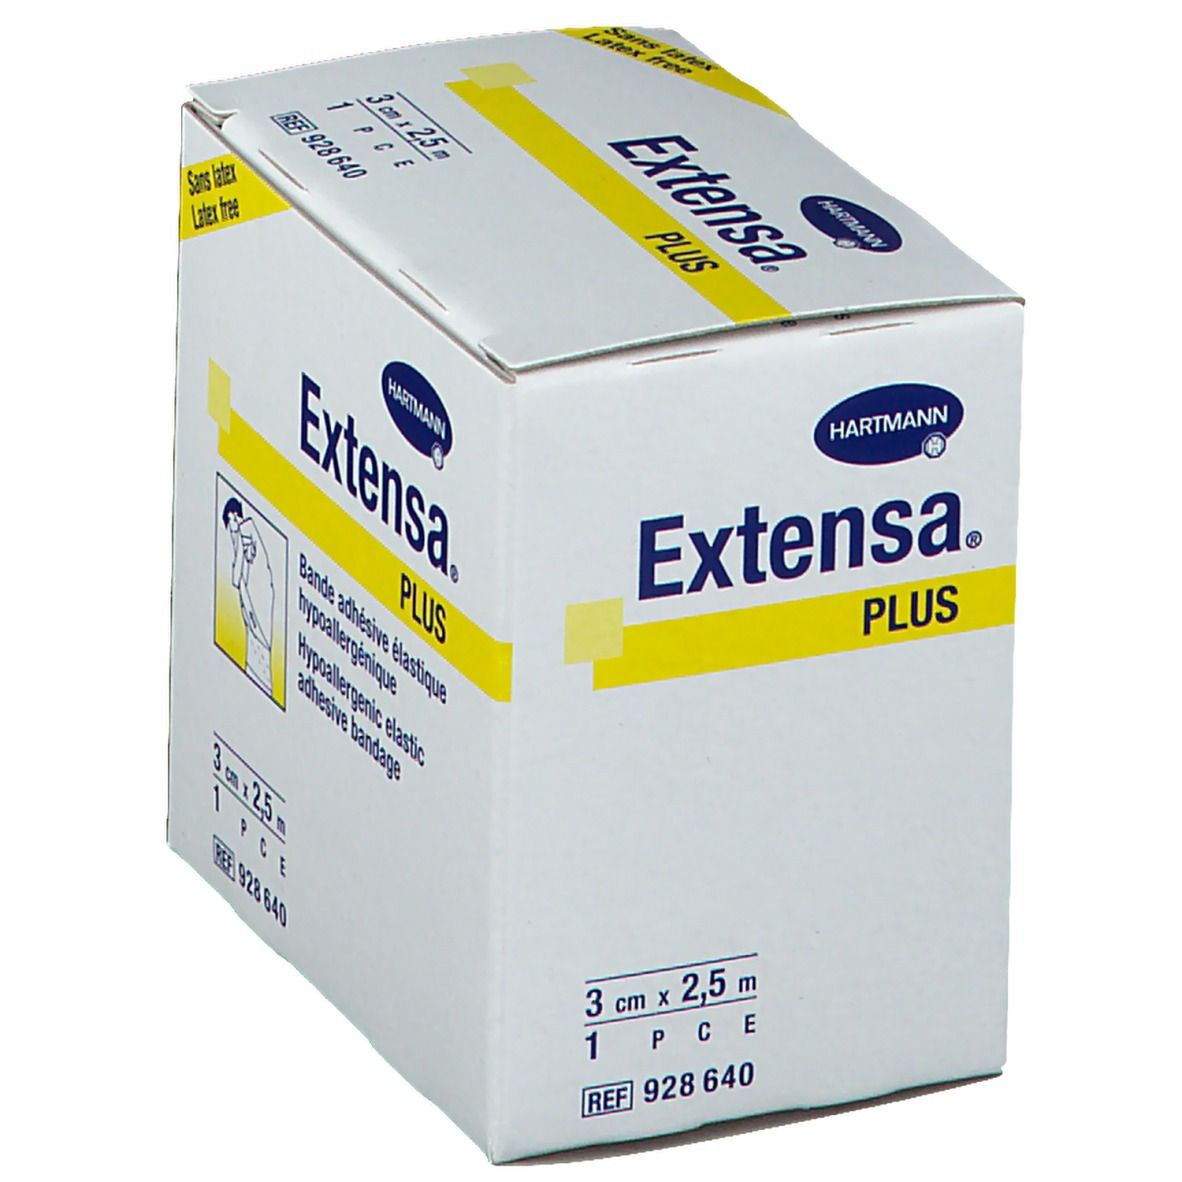 Hartmann Extensa® Plus bande adhésive élastique 2,5 m x 3 cm